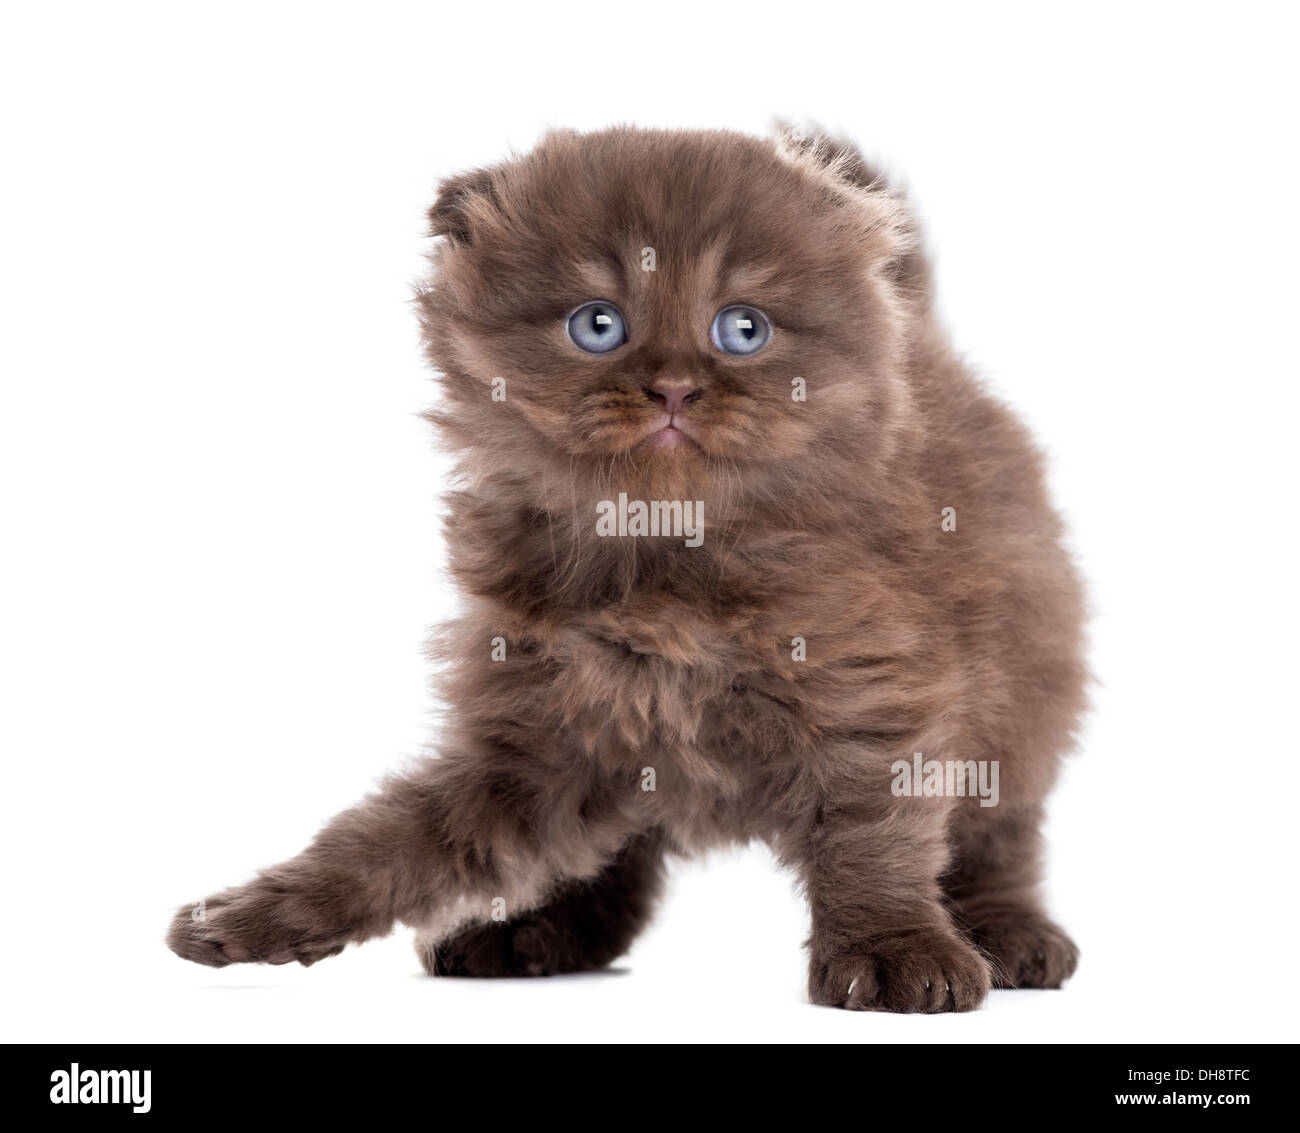 Highland fold gattino in piedi contro uno sfondo bianco Foto Stock